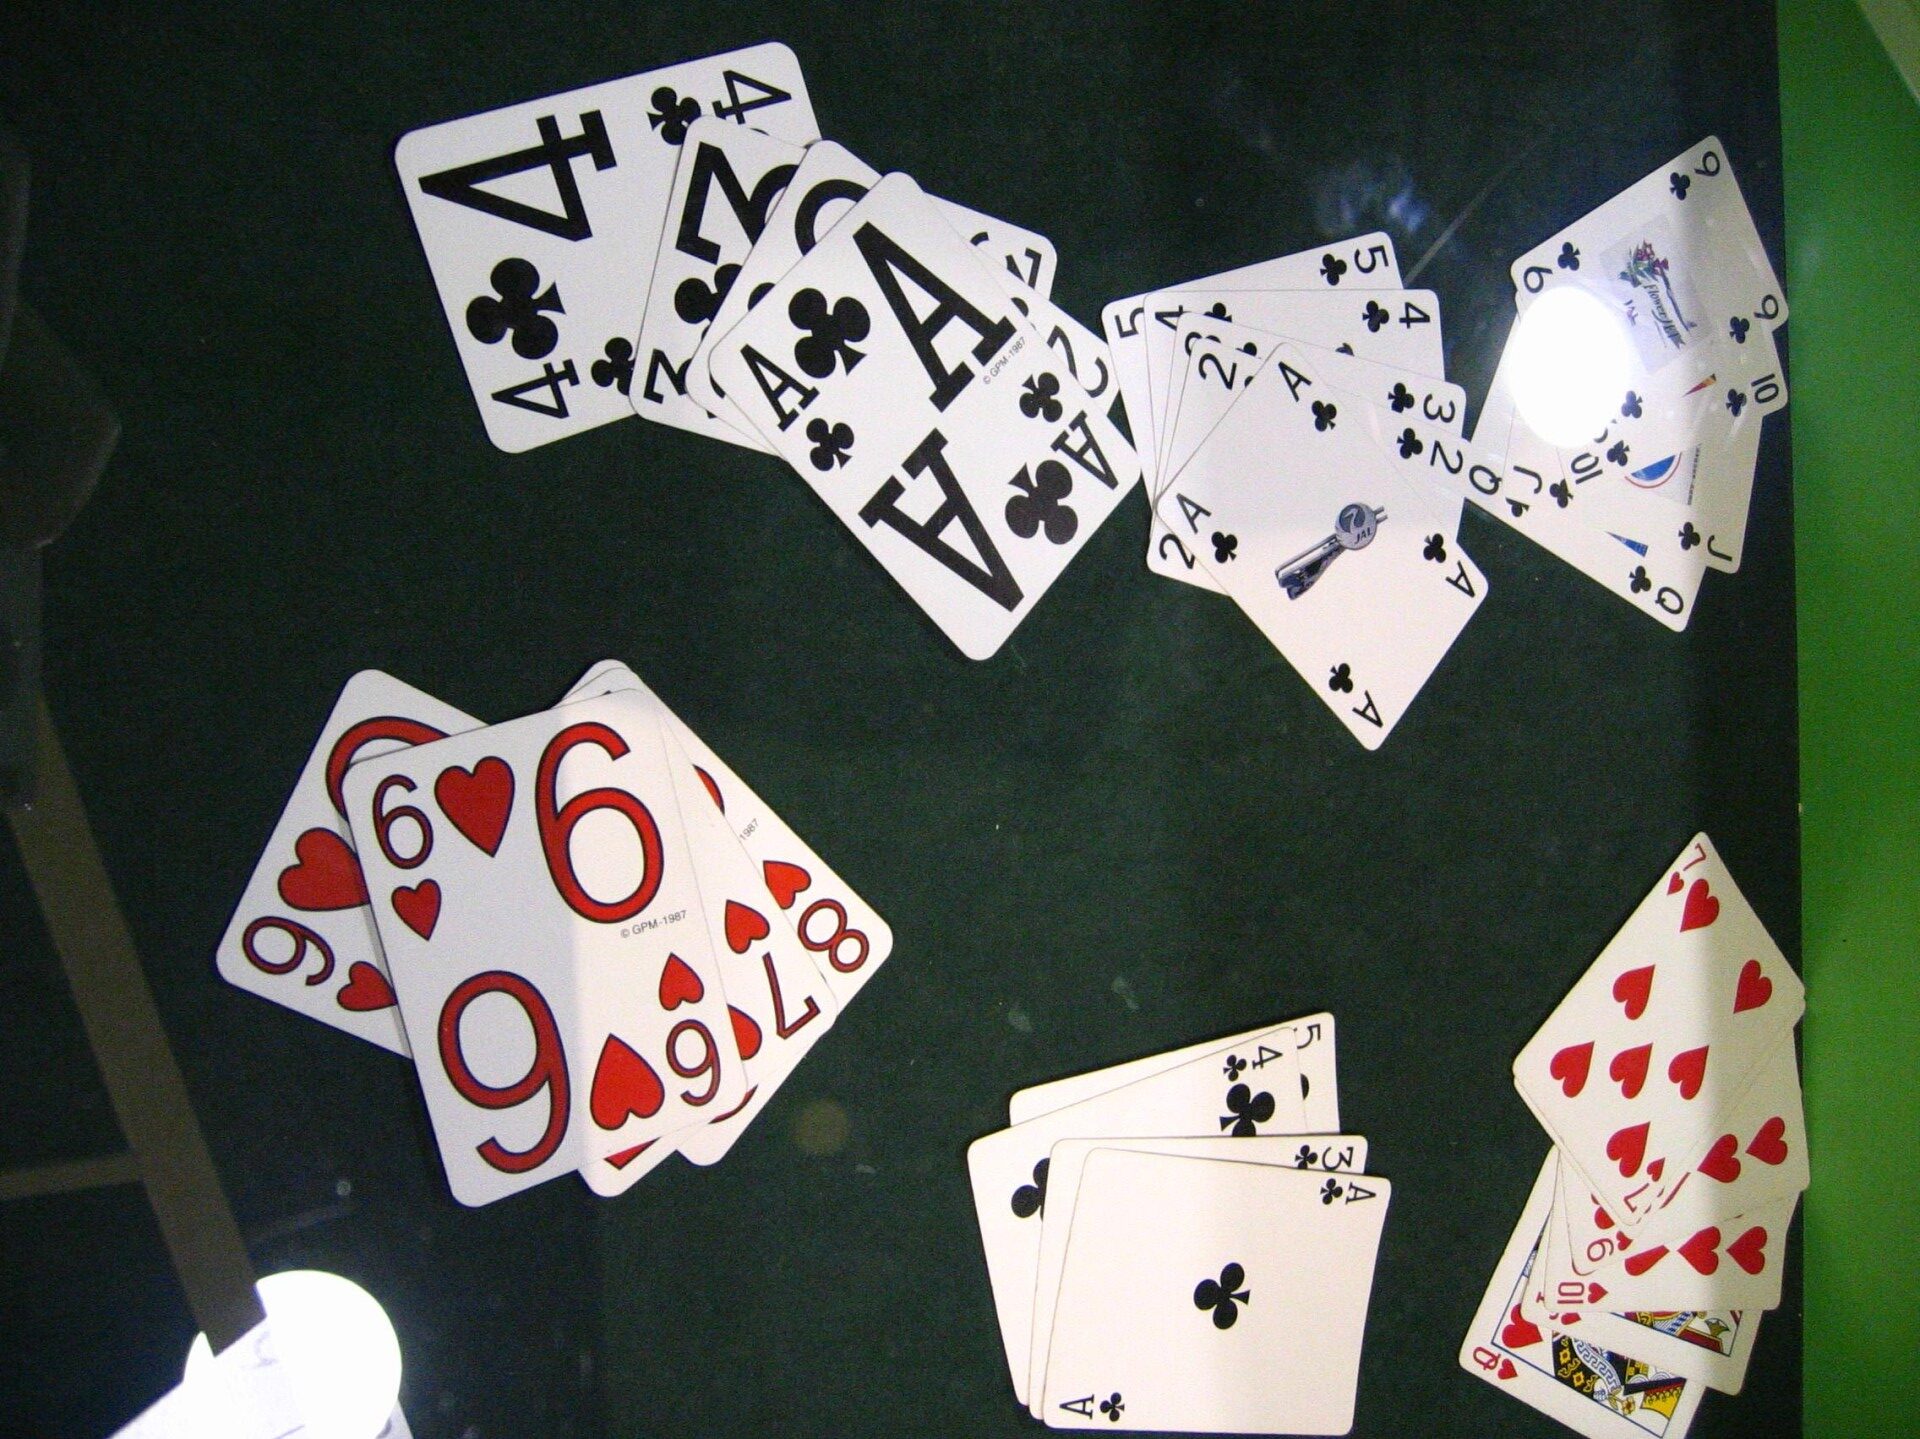 讓撲克牌四個角落都有花色，且放大些，左手慣用者與弱視的人都很方便玩。